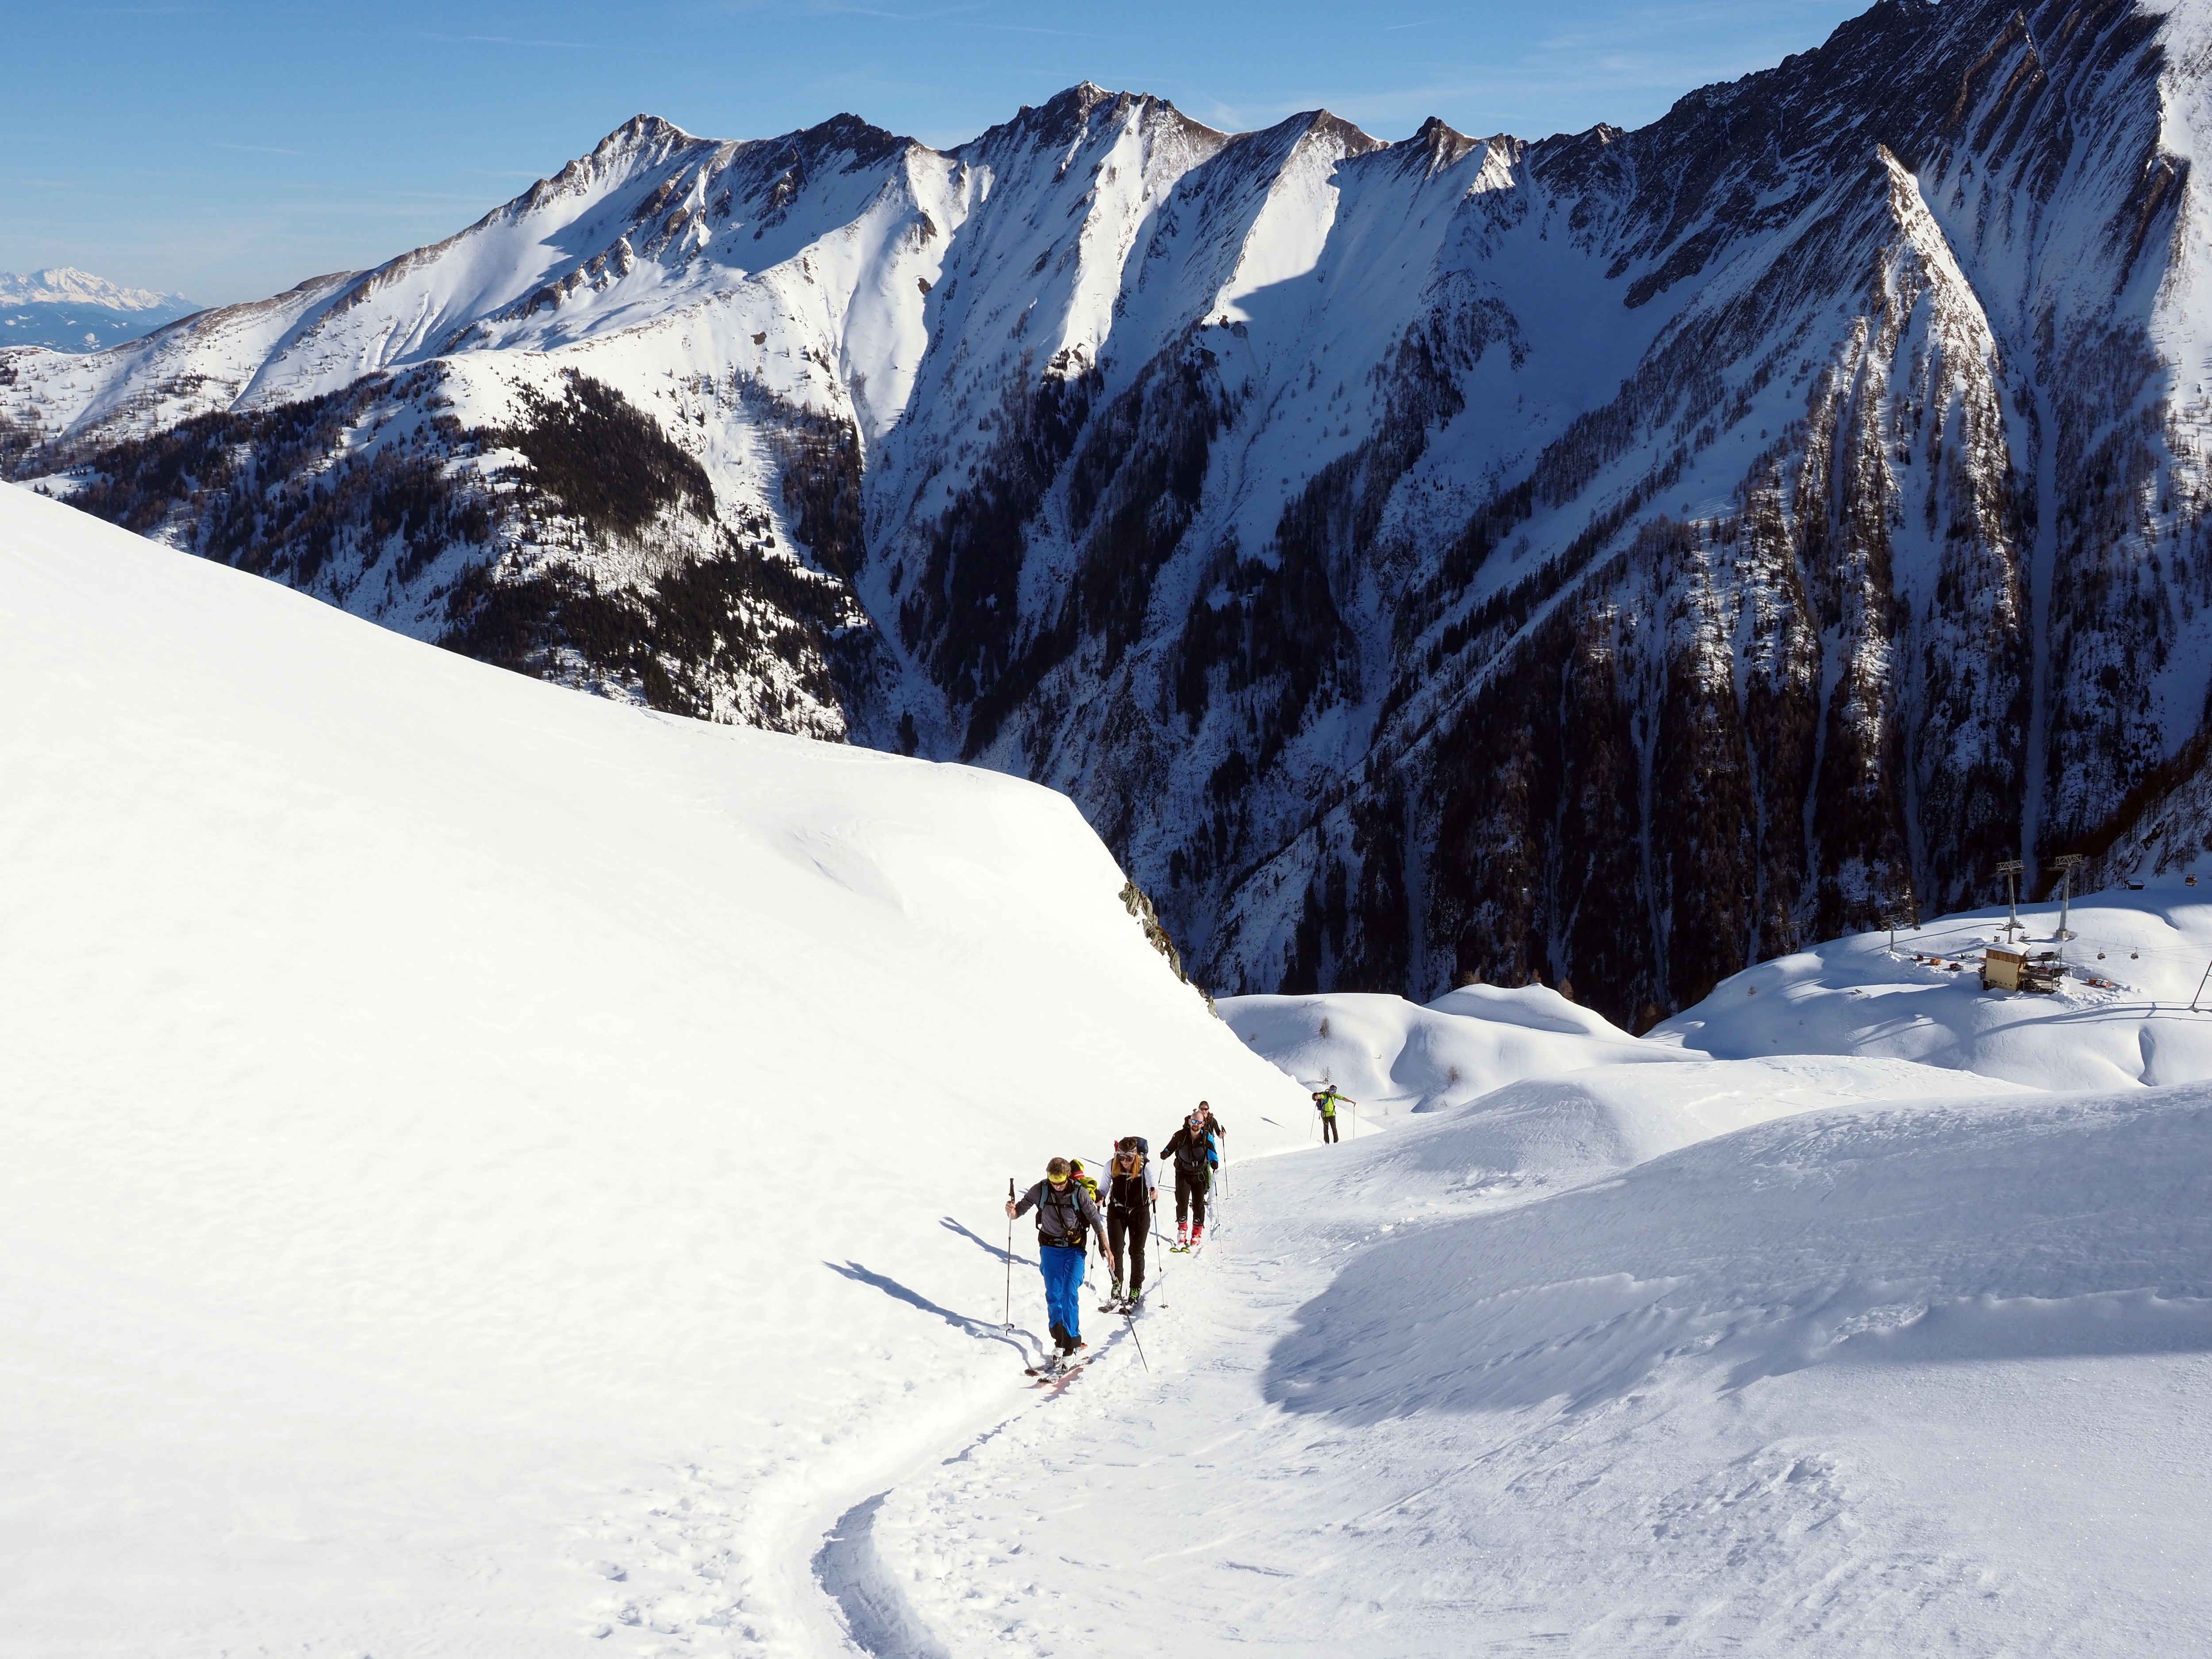 Bergwelten-Event „Meine erste Skitour“ am Kitzsteinhorn